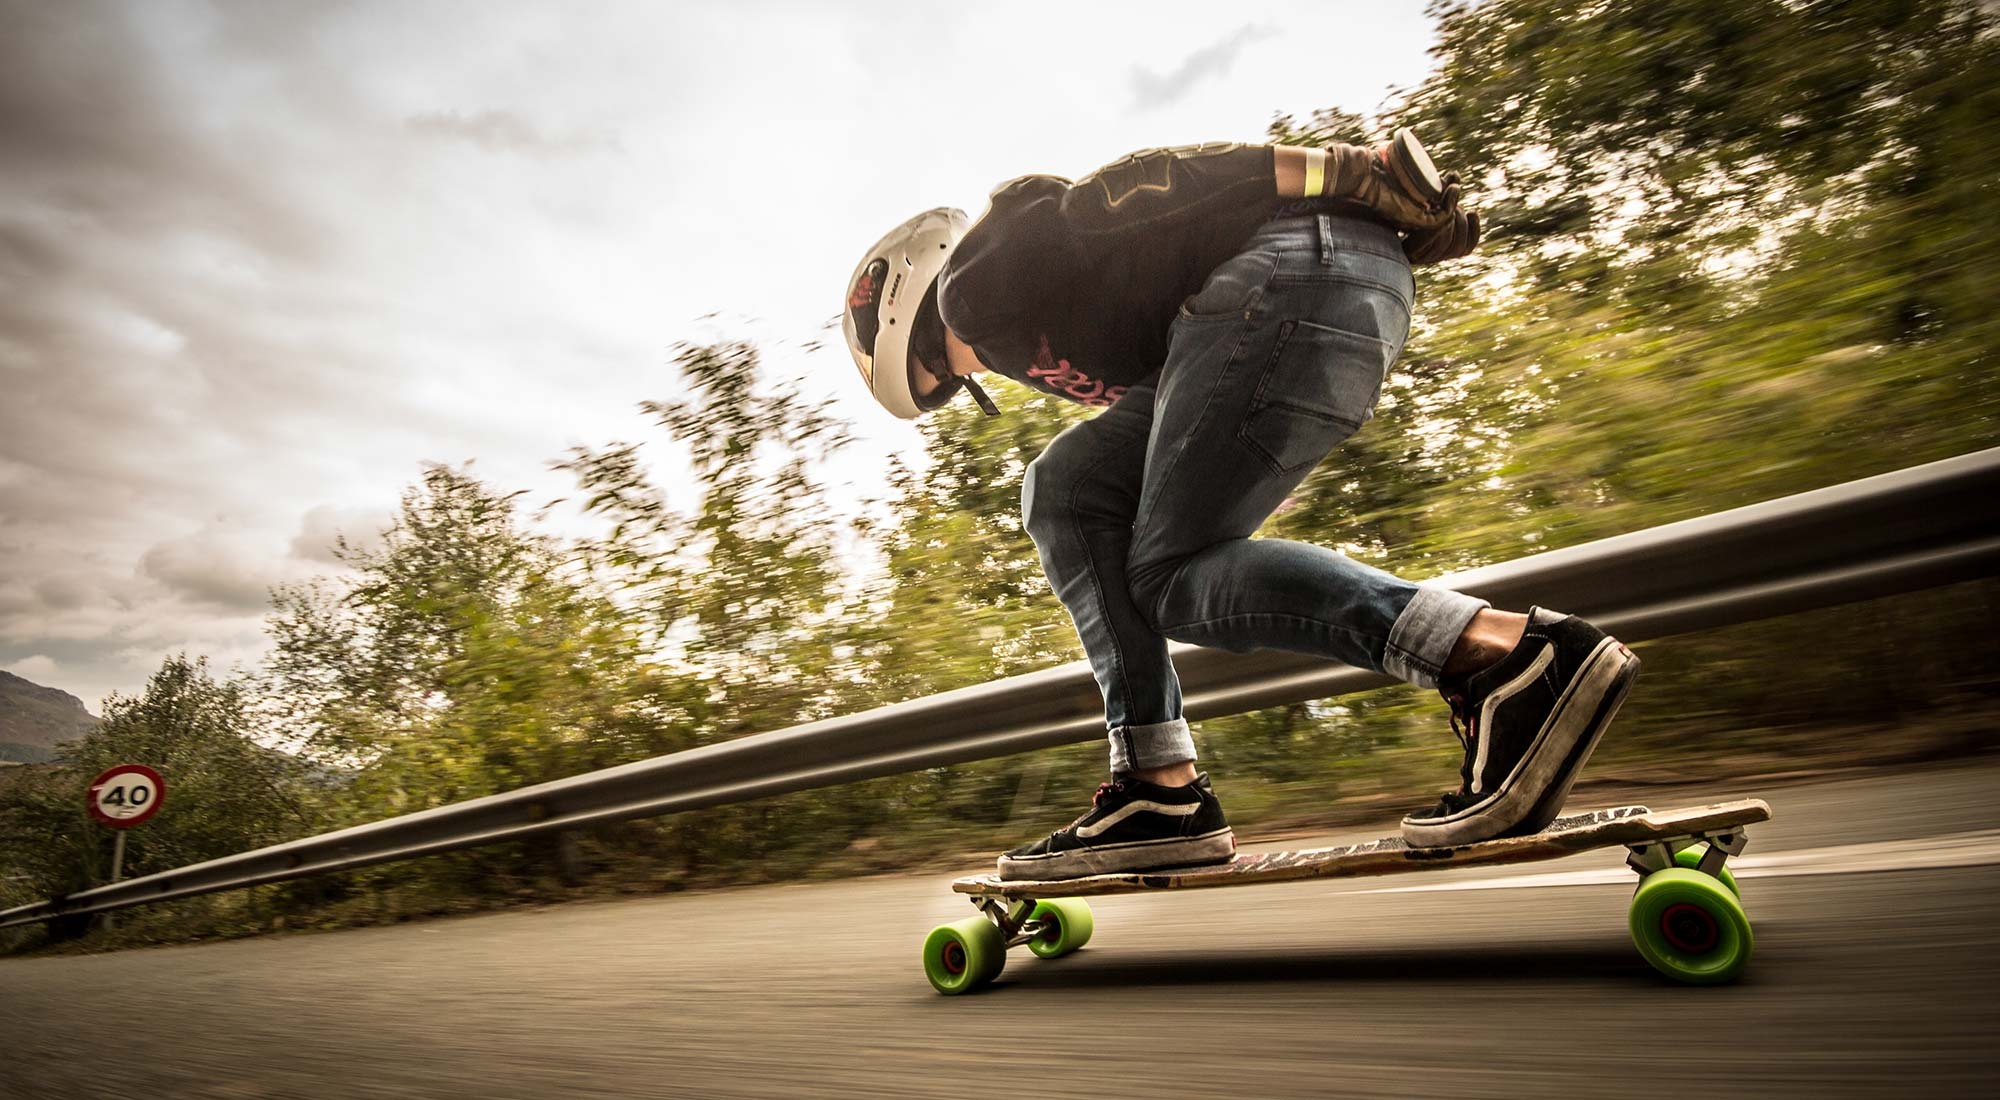 Longboarding: Basati skateboard by Goat Longboards, Designed for Downhill and Freeride. 2000x1100 HD Wallpaper.